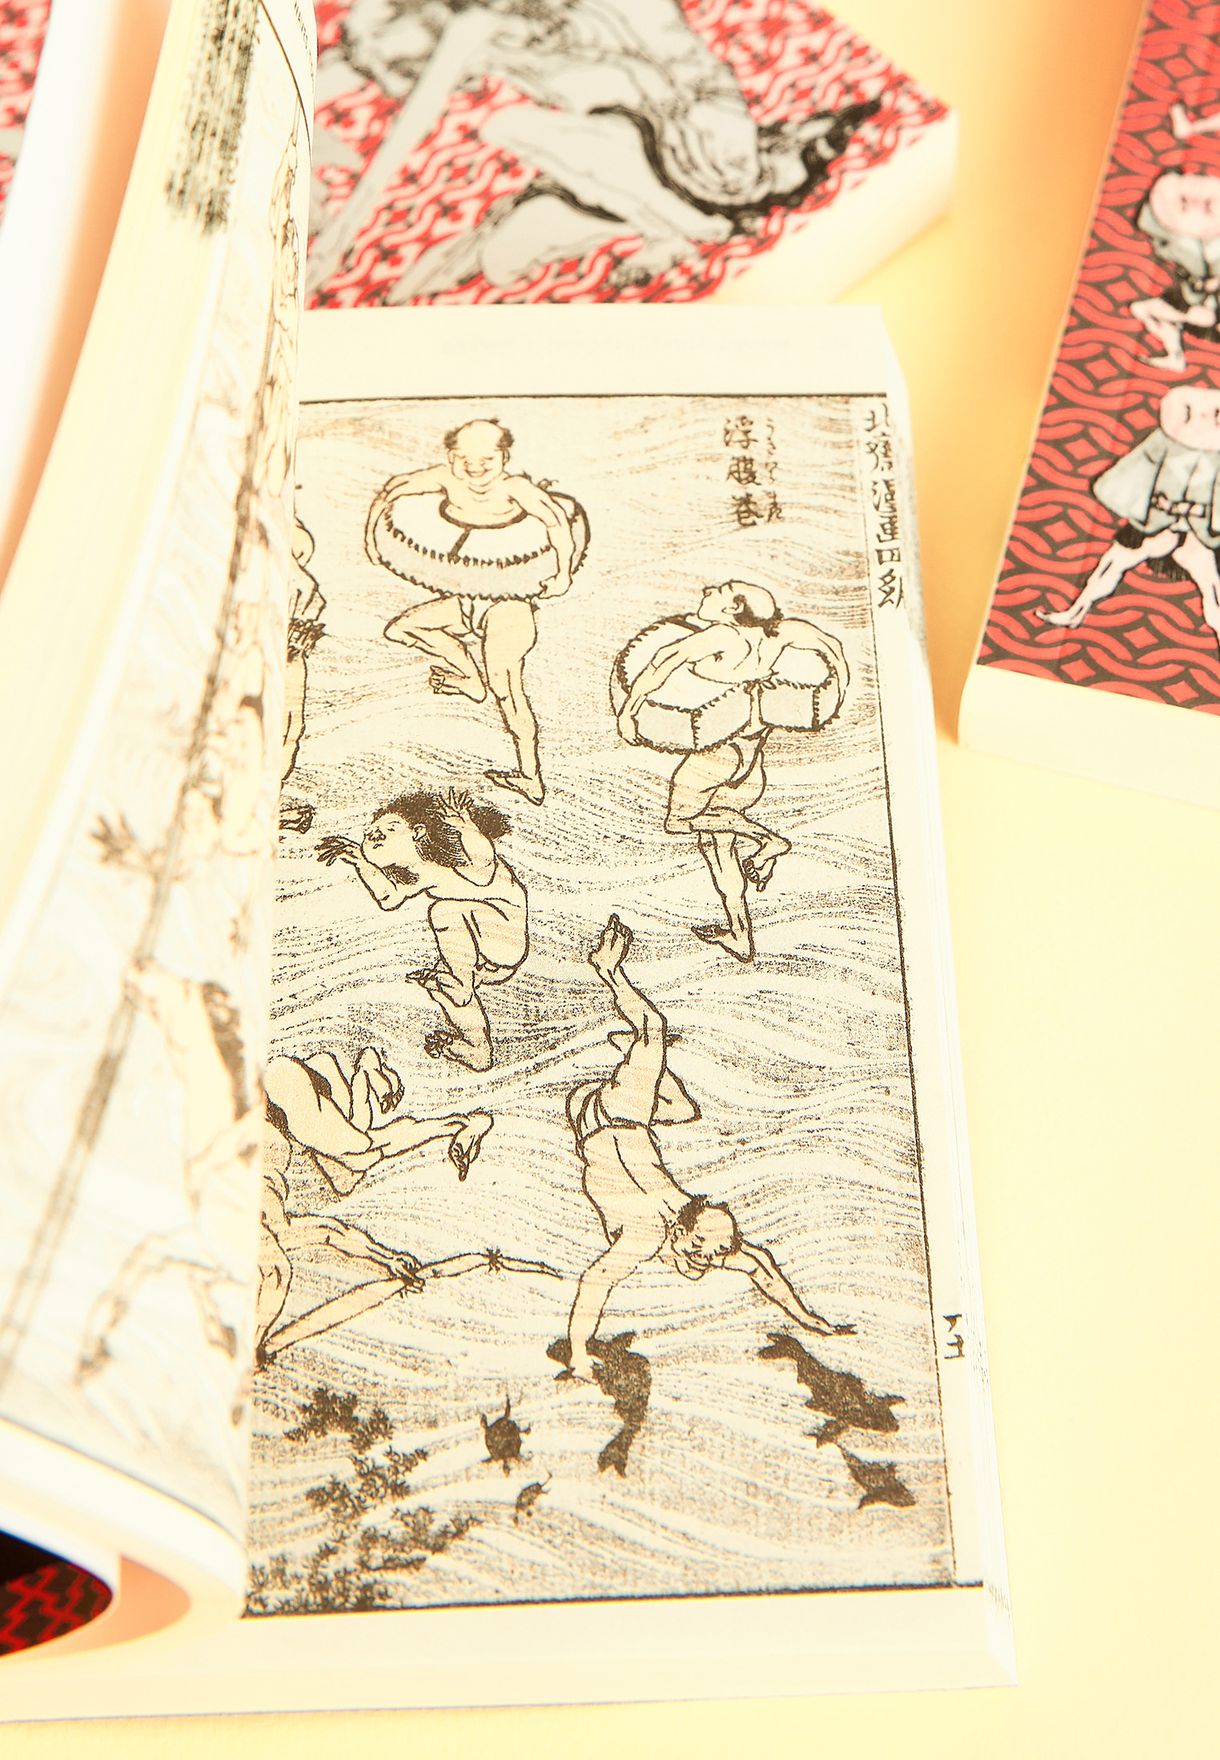 رسومات هوكوساي مانغا